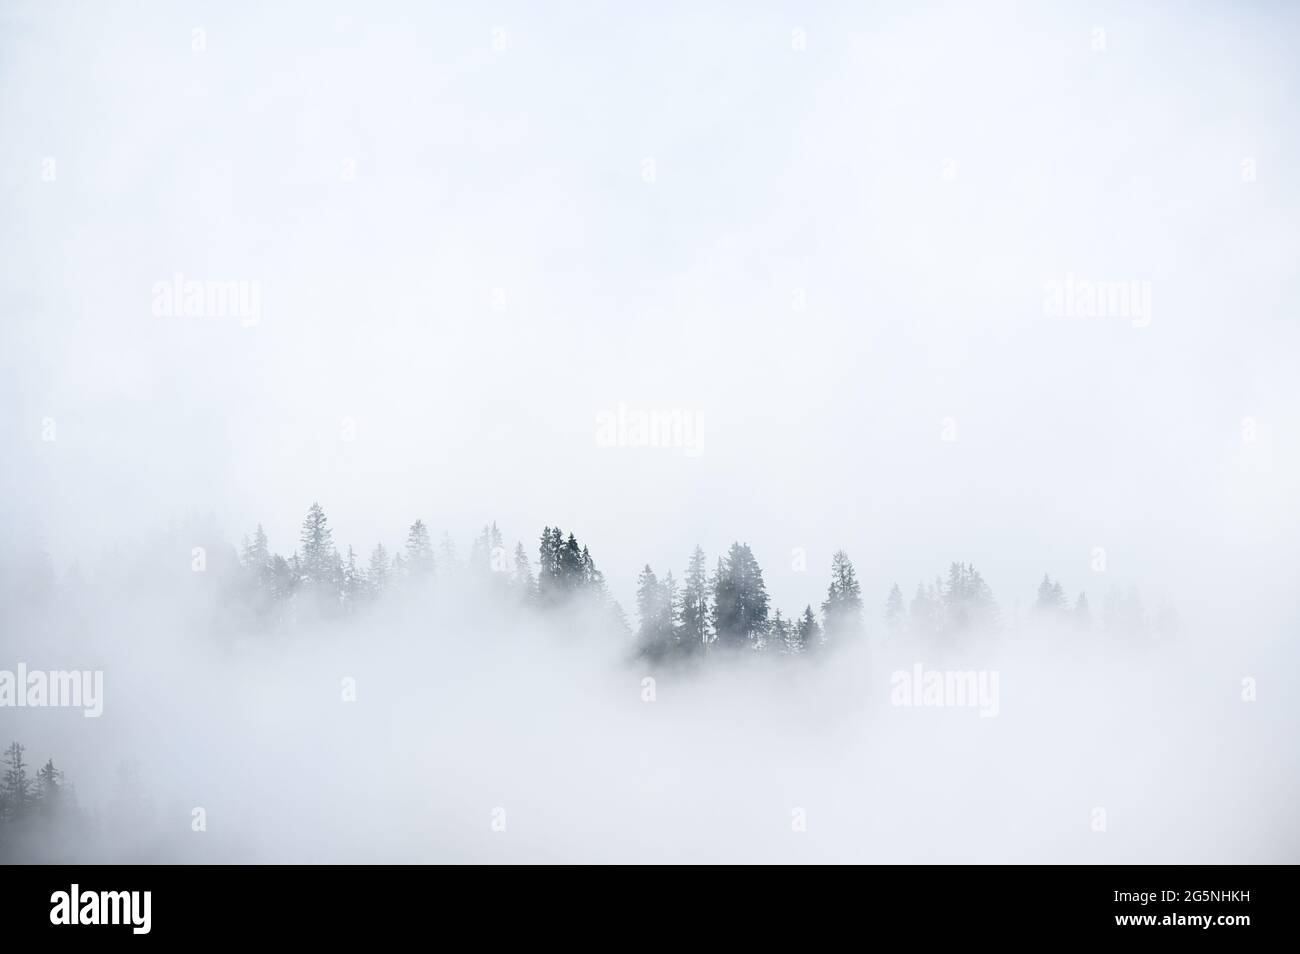 Mistische Landschaft in einem Alpenwald in den berner alpen Stockfoto